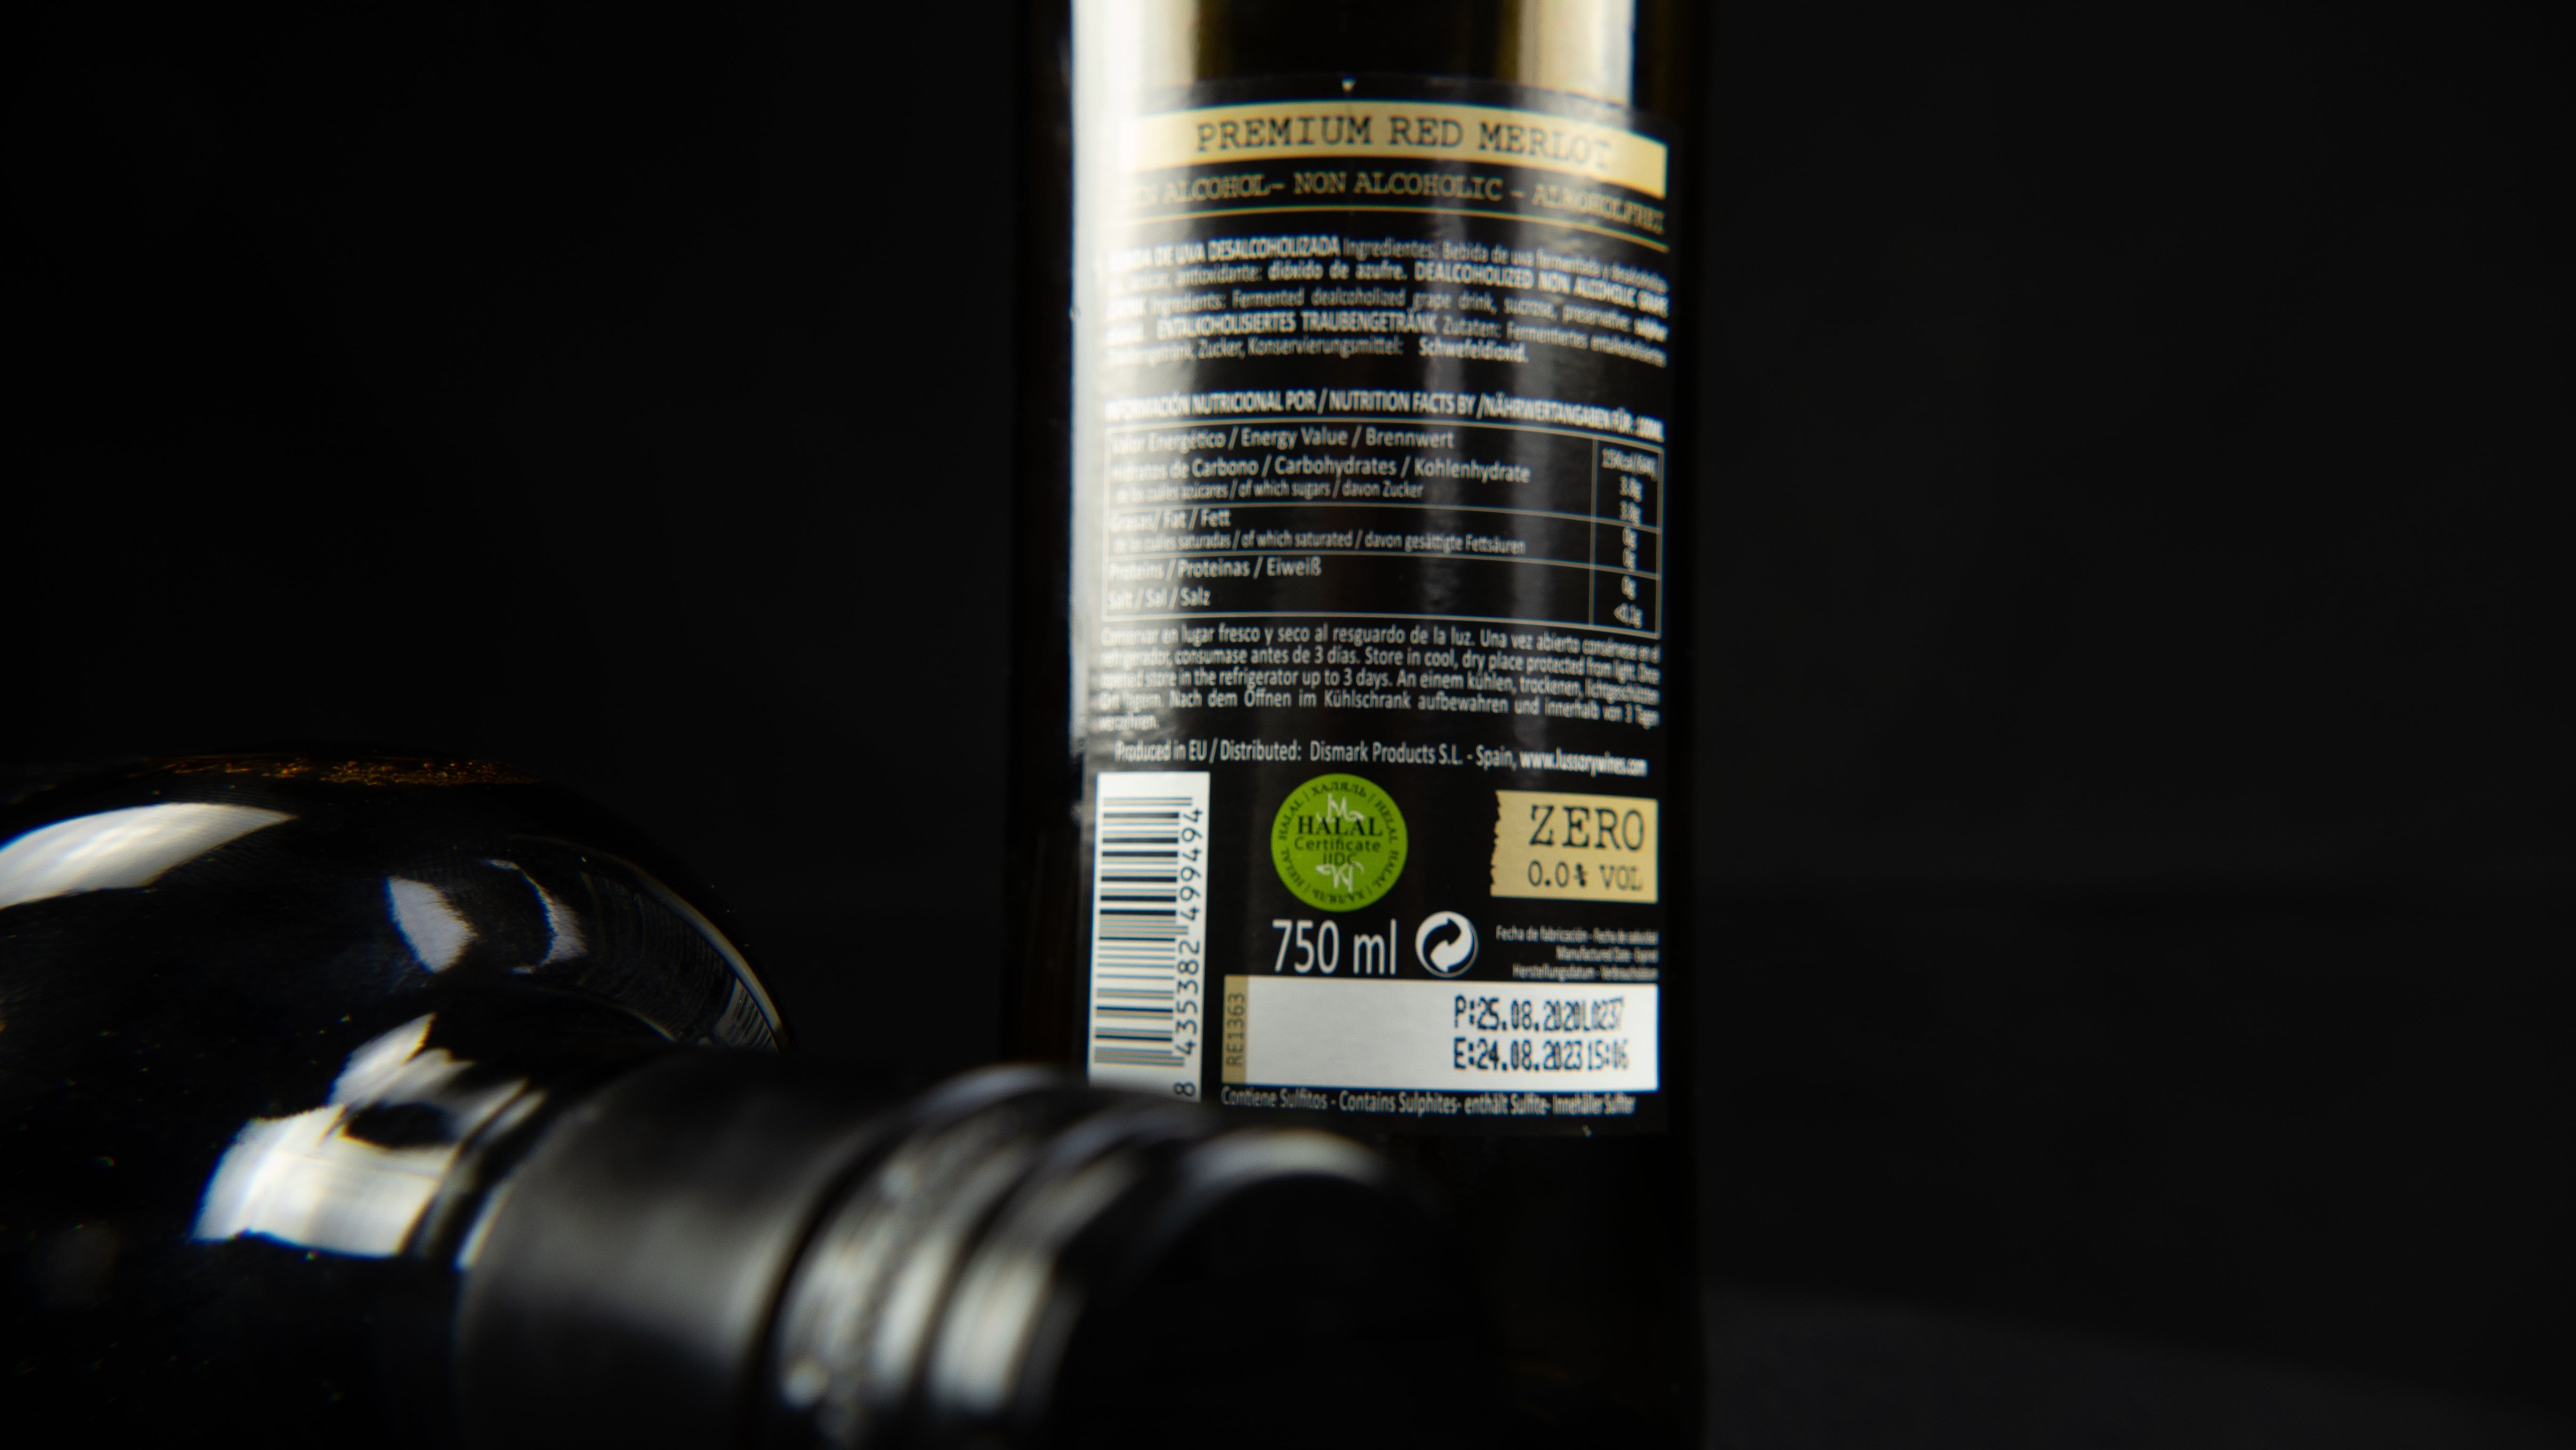 Lussory - Premium Merlot Red Wine - 750 ml